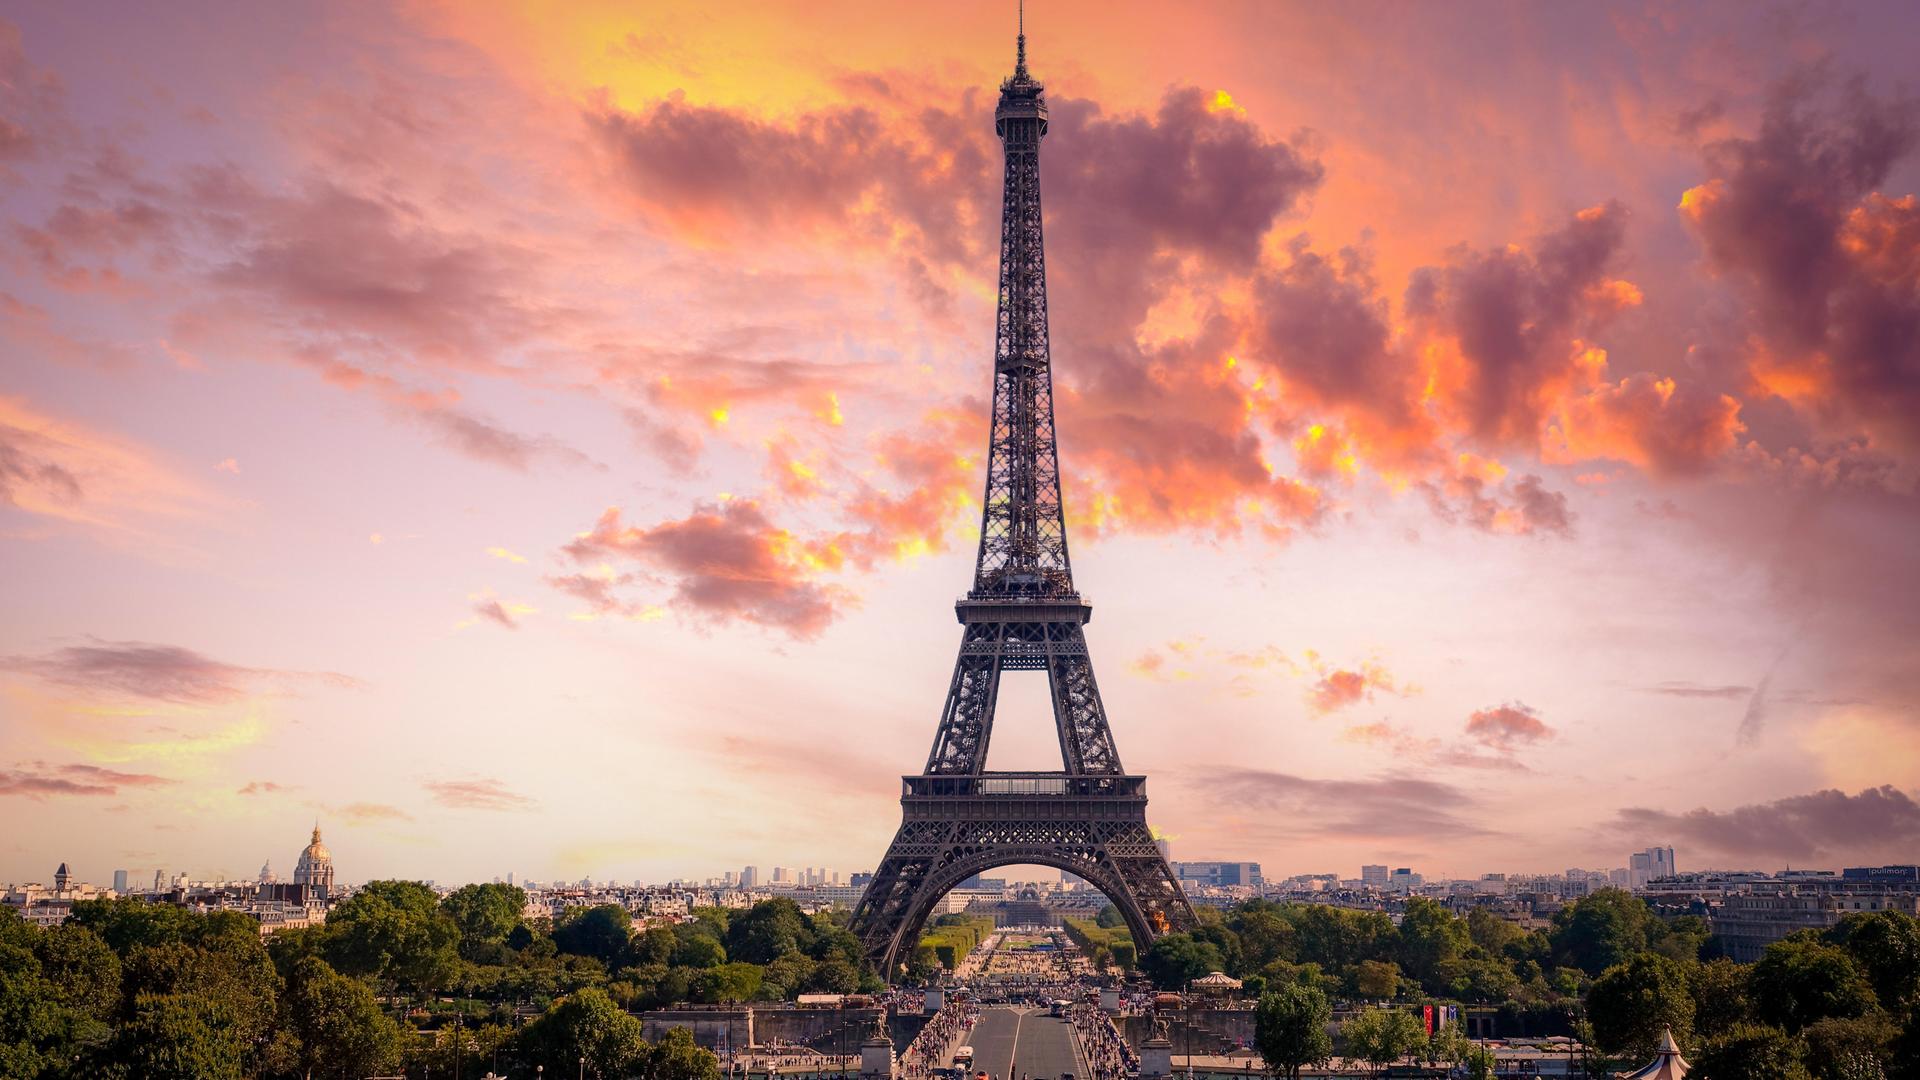 Sein bedeutenstes Werk, der Eiffel-Turm, wurde für die Pariser Weltausstellung 1889 anlässlich des 100. Jahrestages der französischen Revolution gebaut.